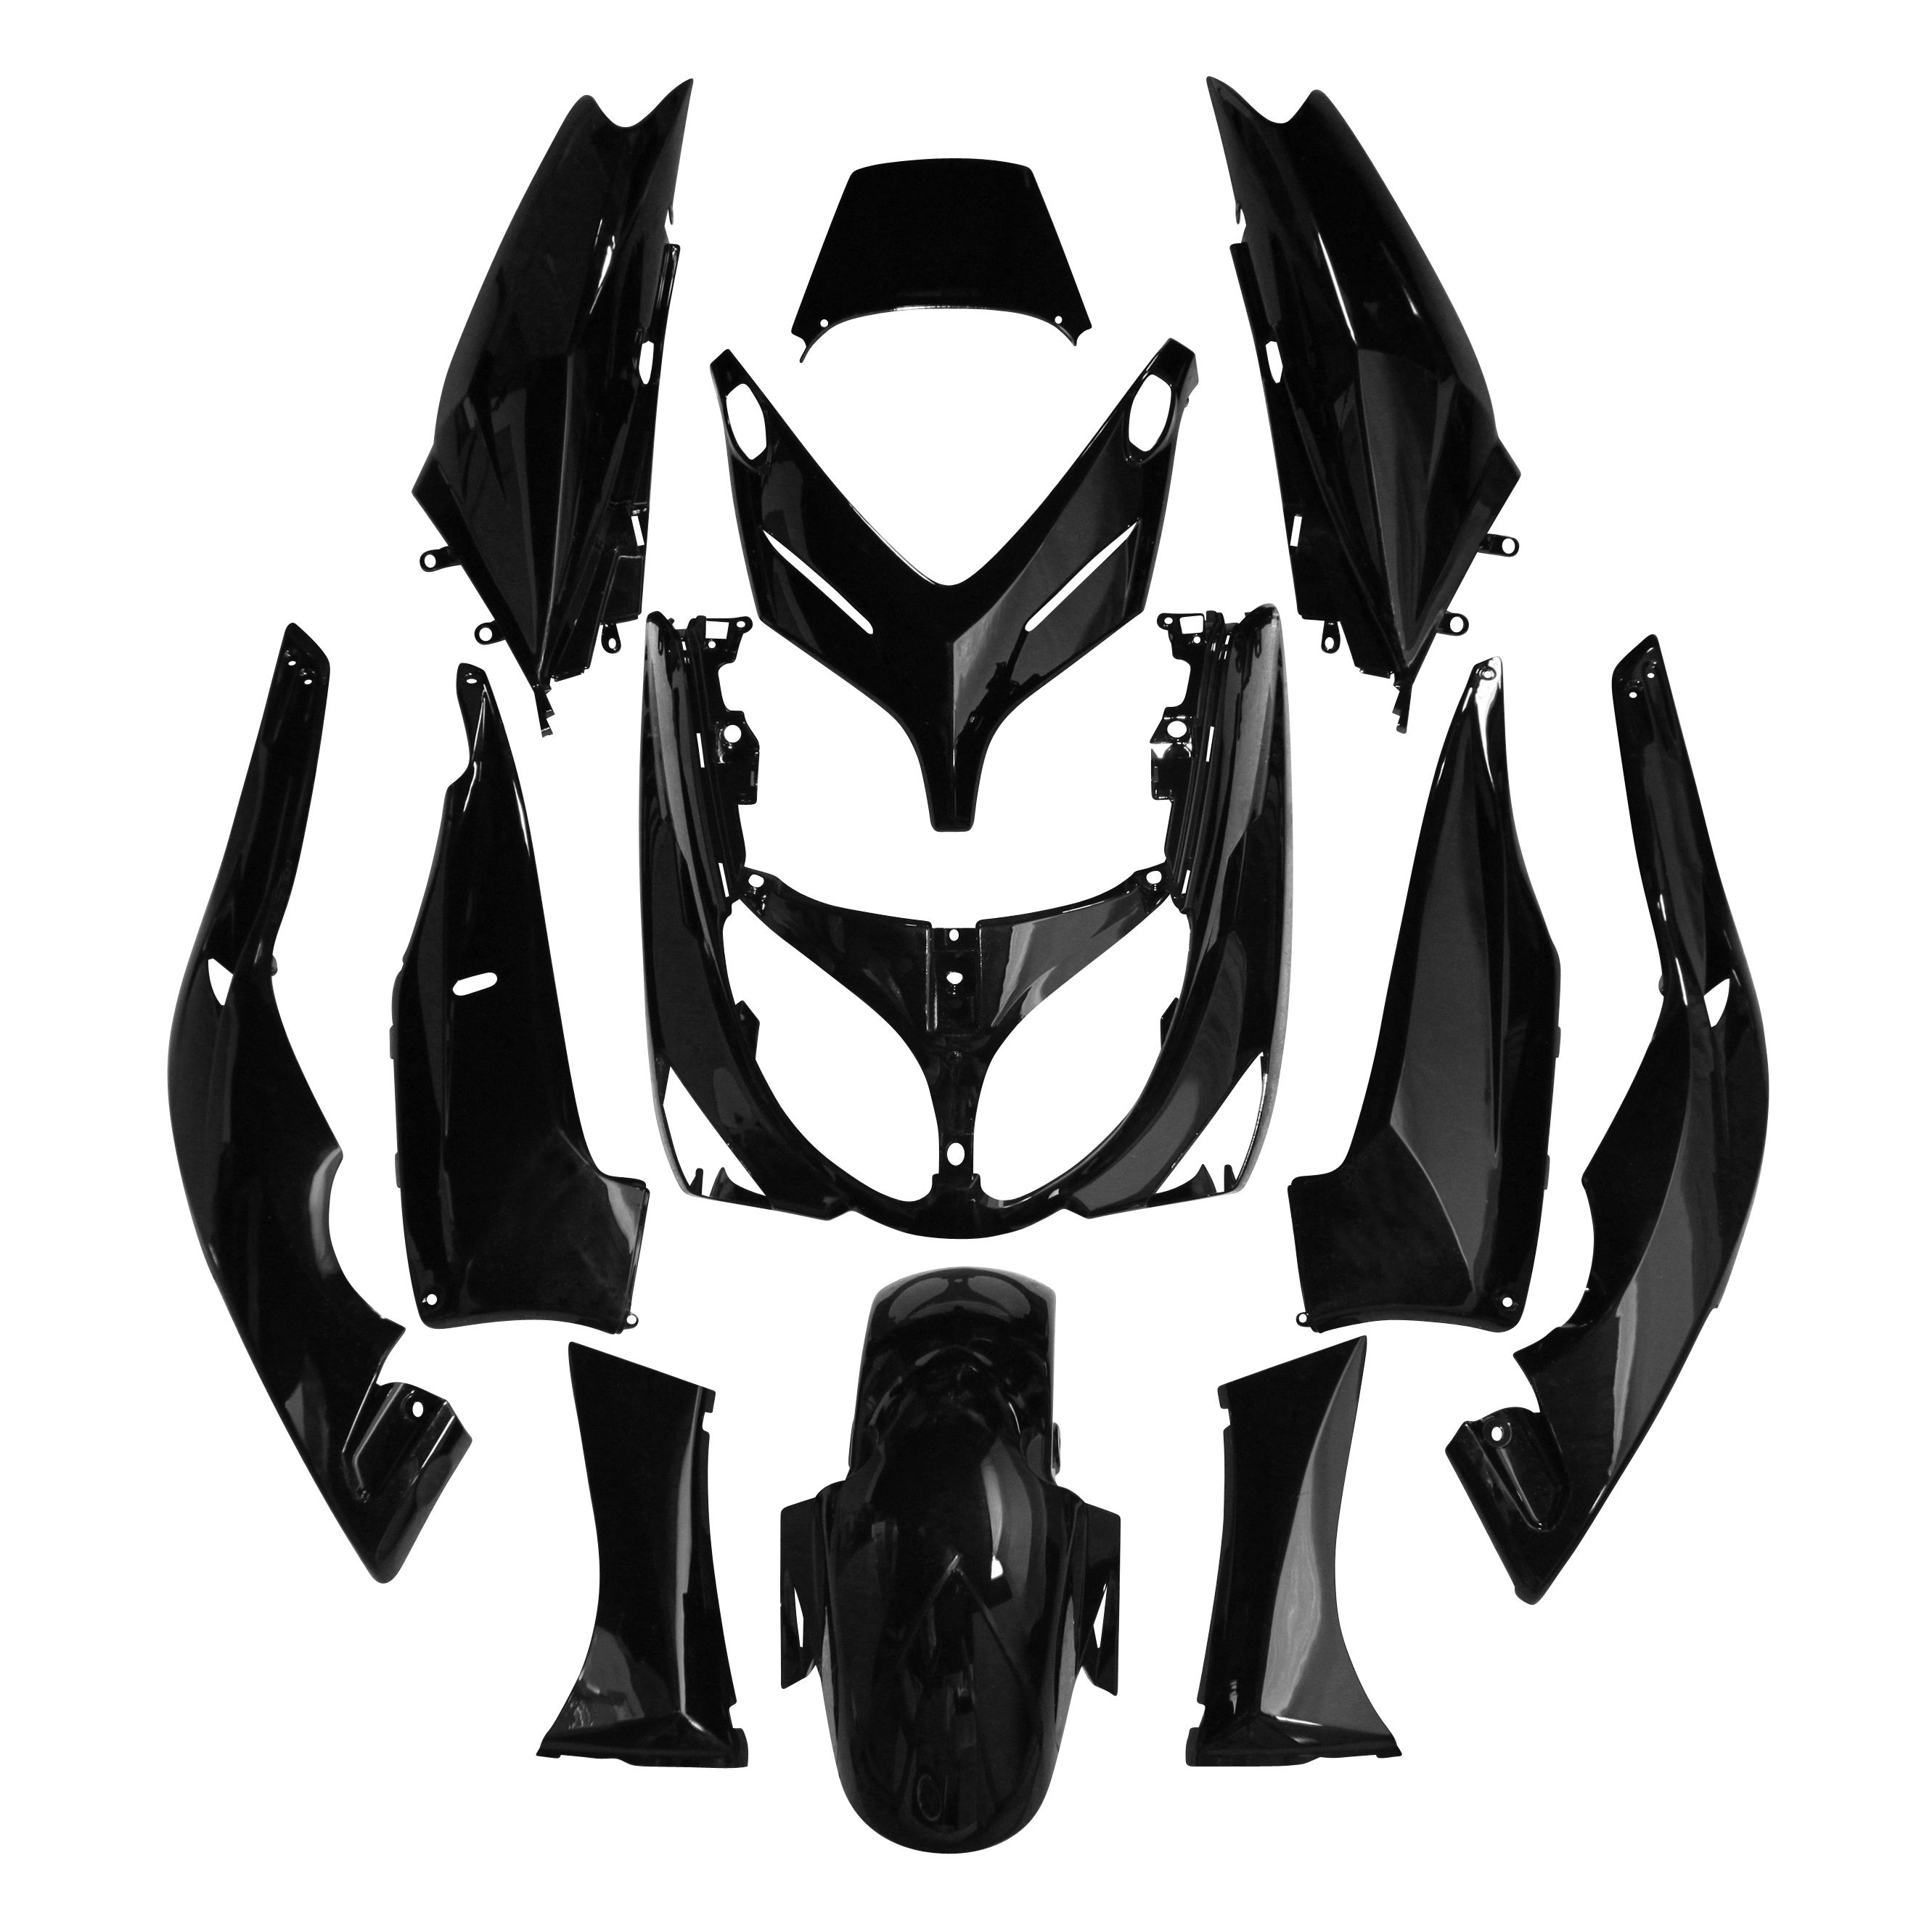 Image of Kit carénage P2R noir brillant (12 pièces) maxi-scooter